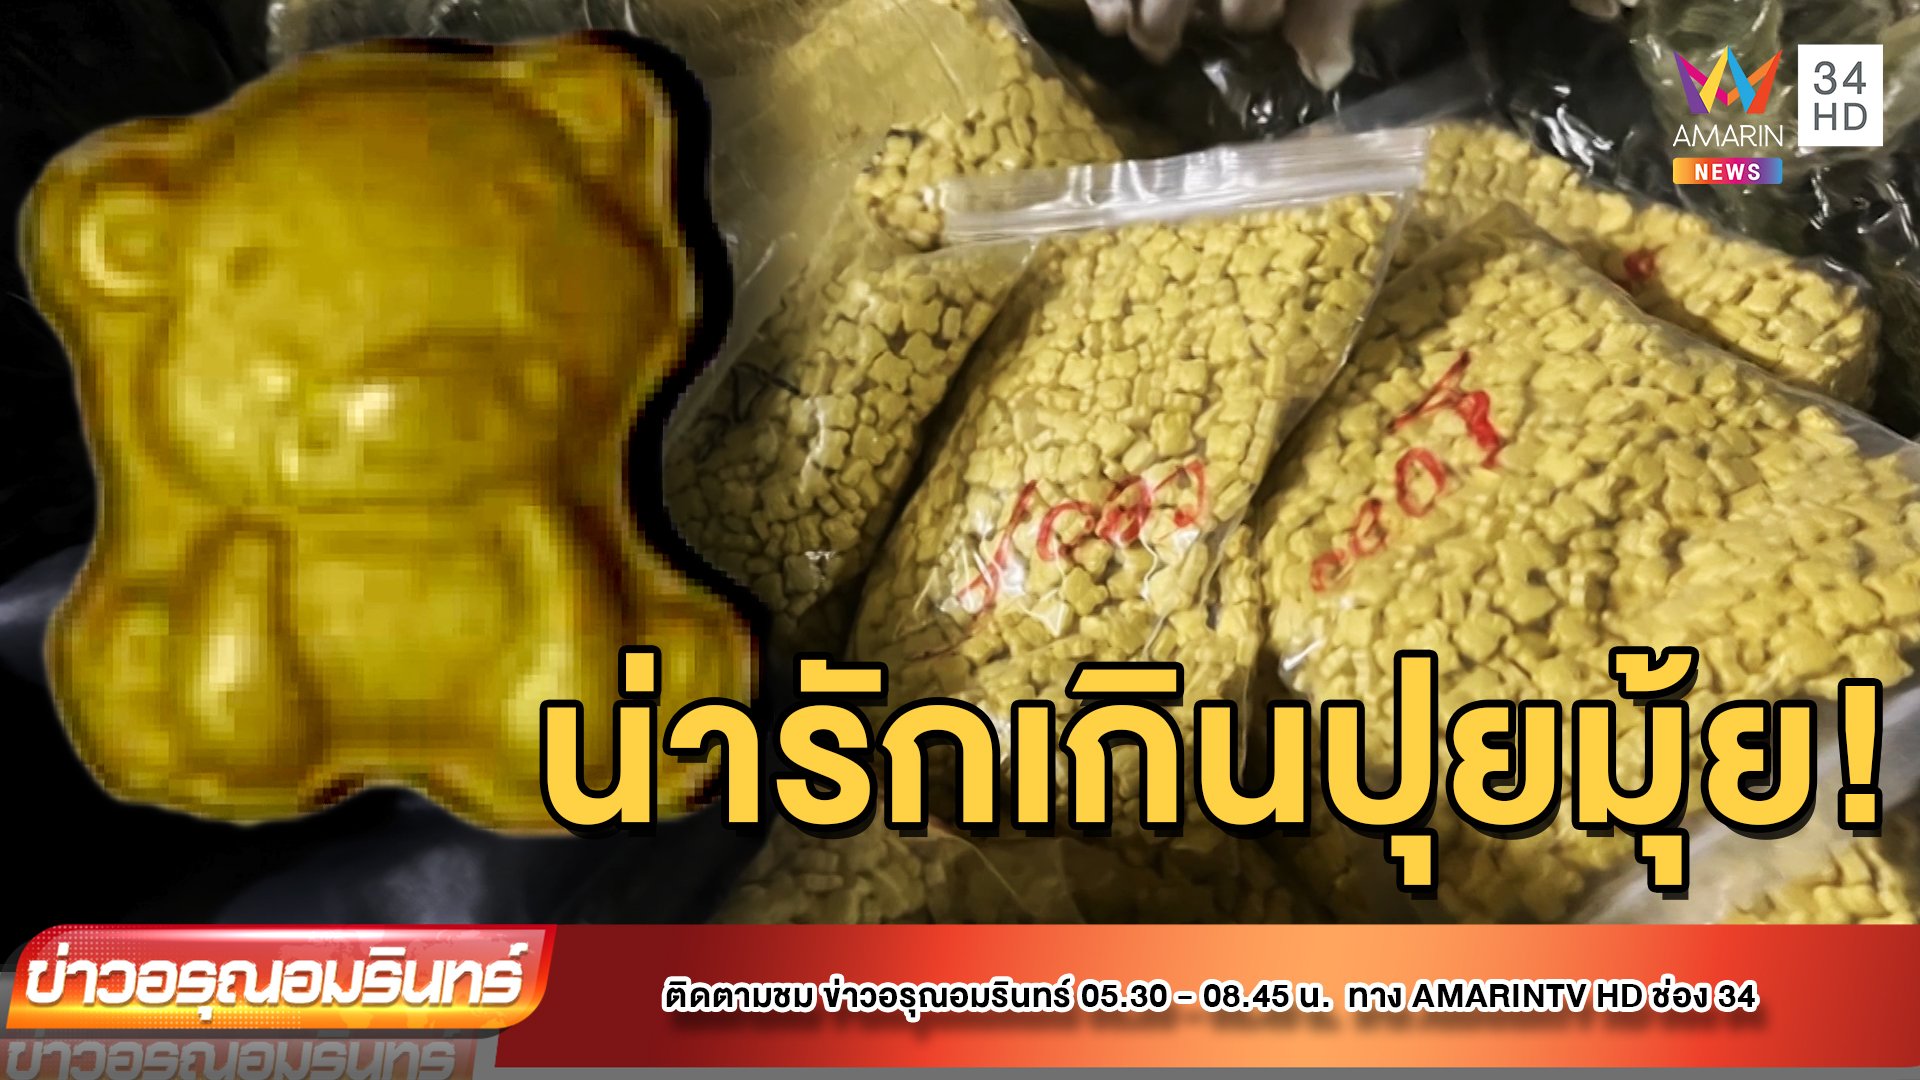 ตะมุตะมิ! ยาอีหมีน้อยปลุกเซ็กซ์ ระบาดเข้าไทย | ข่าวอรุณอมรินทร์ | 18 ก.ค. 65 | AMARIN TVHD34